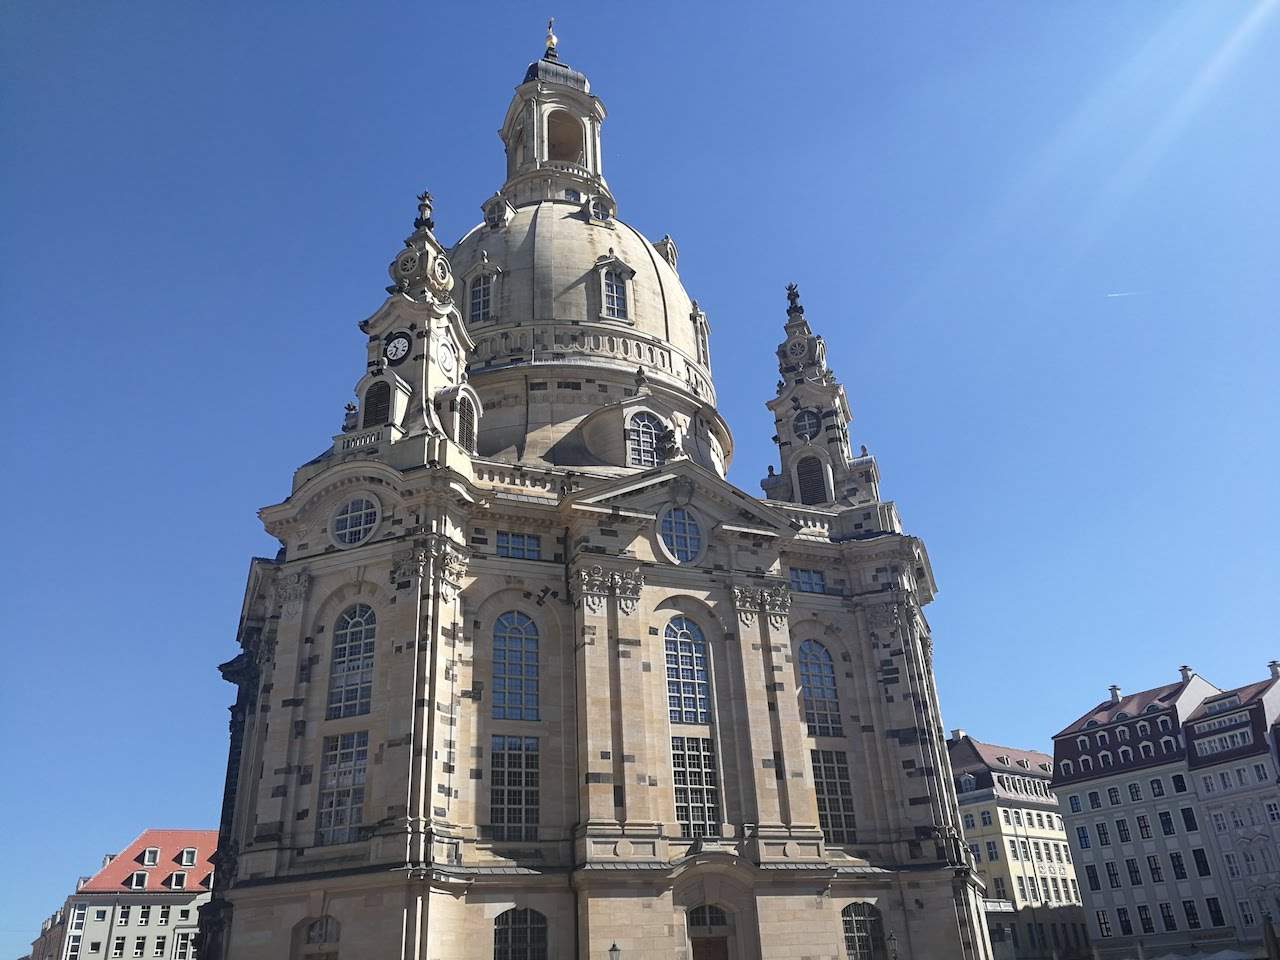 The Dresden Frauenkirche